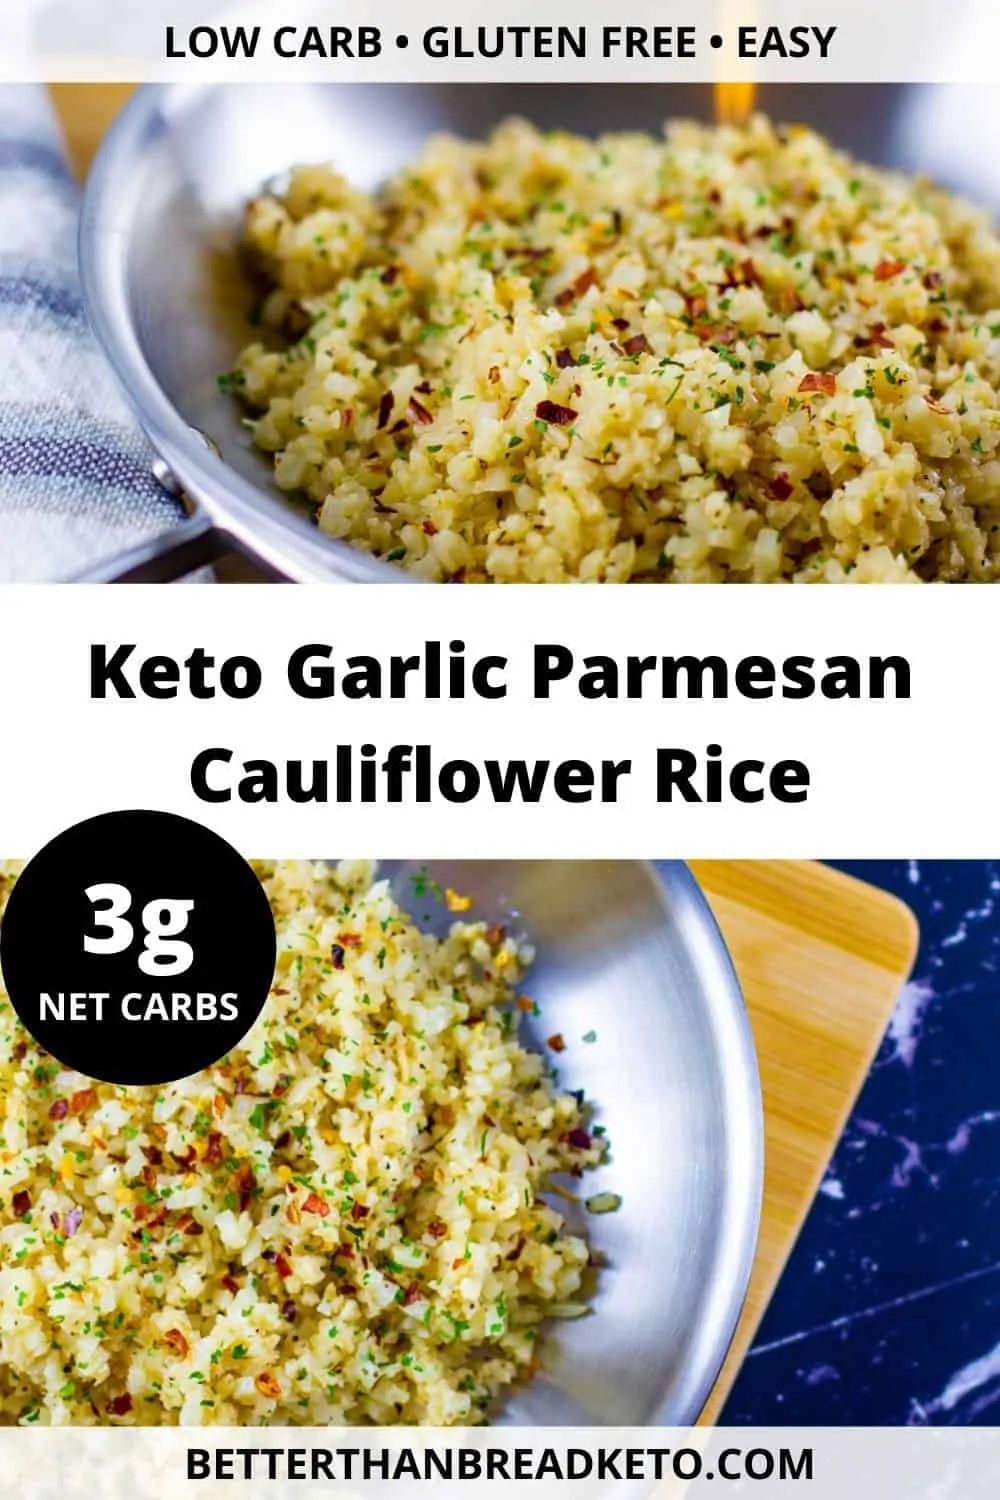 Keto Garlic Parmesan Cauliflower Rice